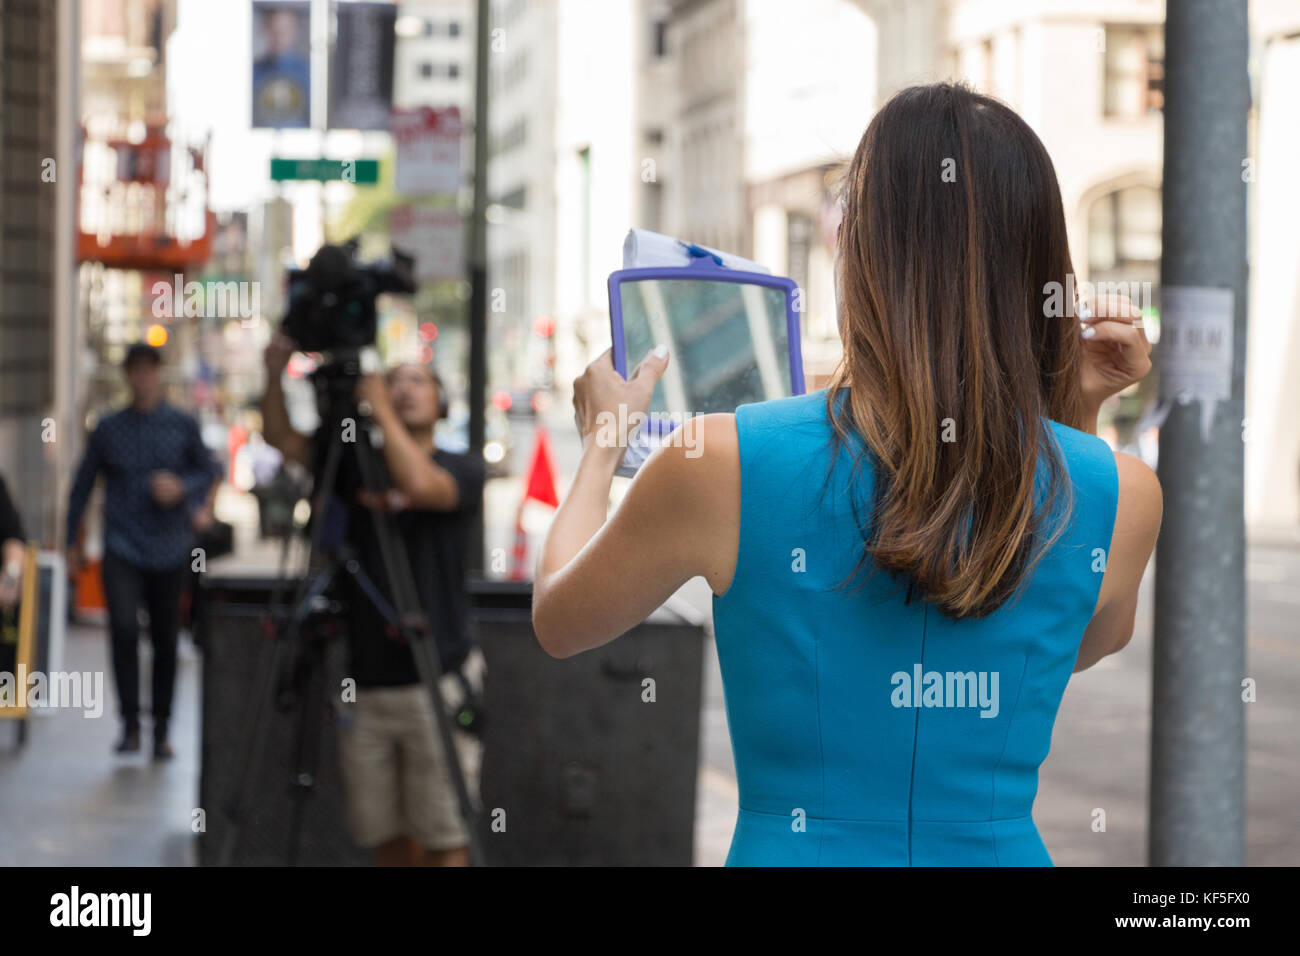 San Francisco, USA - Septembre 13th, 2017 : une femme journaliste de télévision est à son miroir avant diffusion à un coin de la ville de San Francisco. Banque D'Images